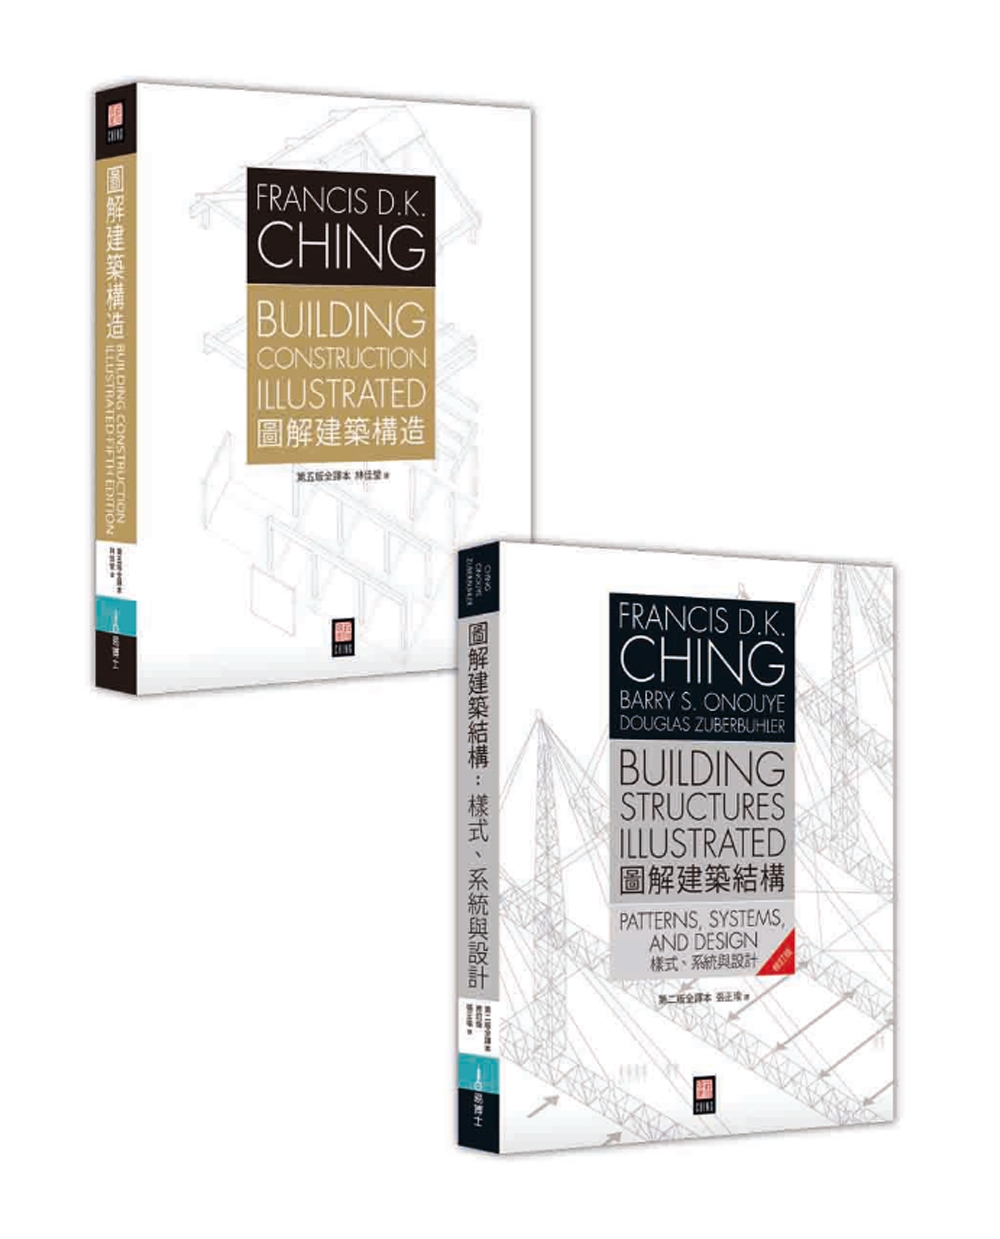 Francis D.K. Ching 建築人必備經典《圖解建築結構》+《圖解建築構造》套書